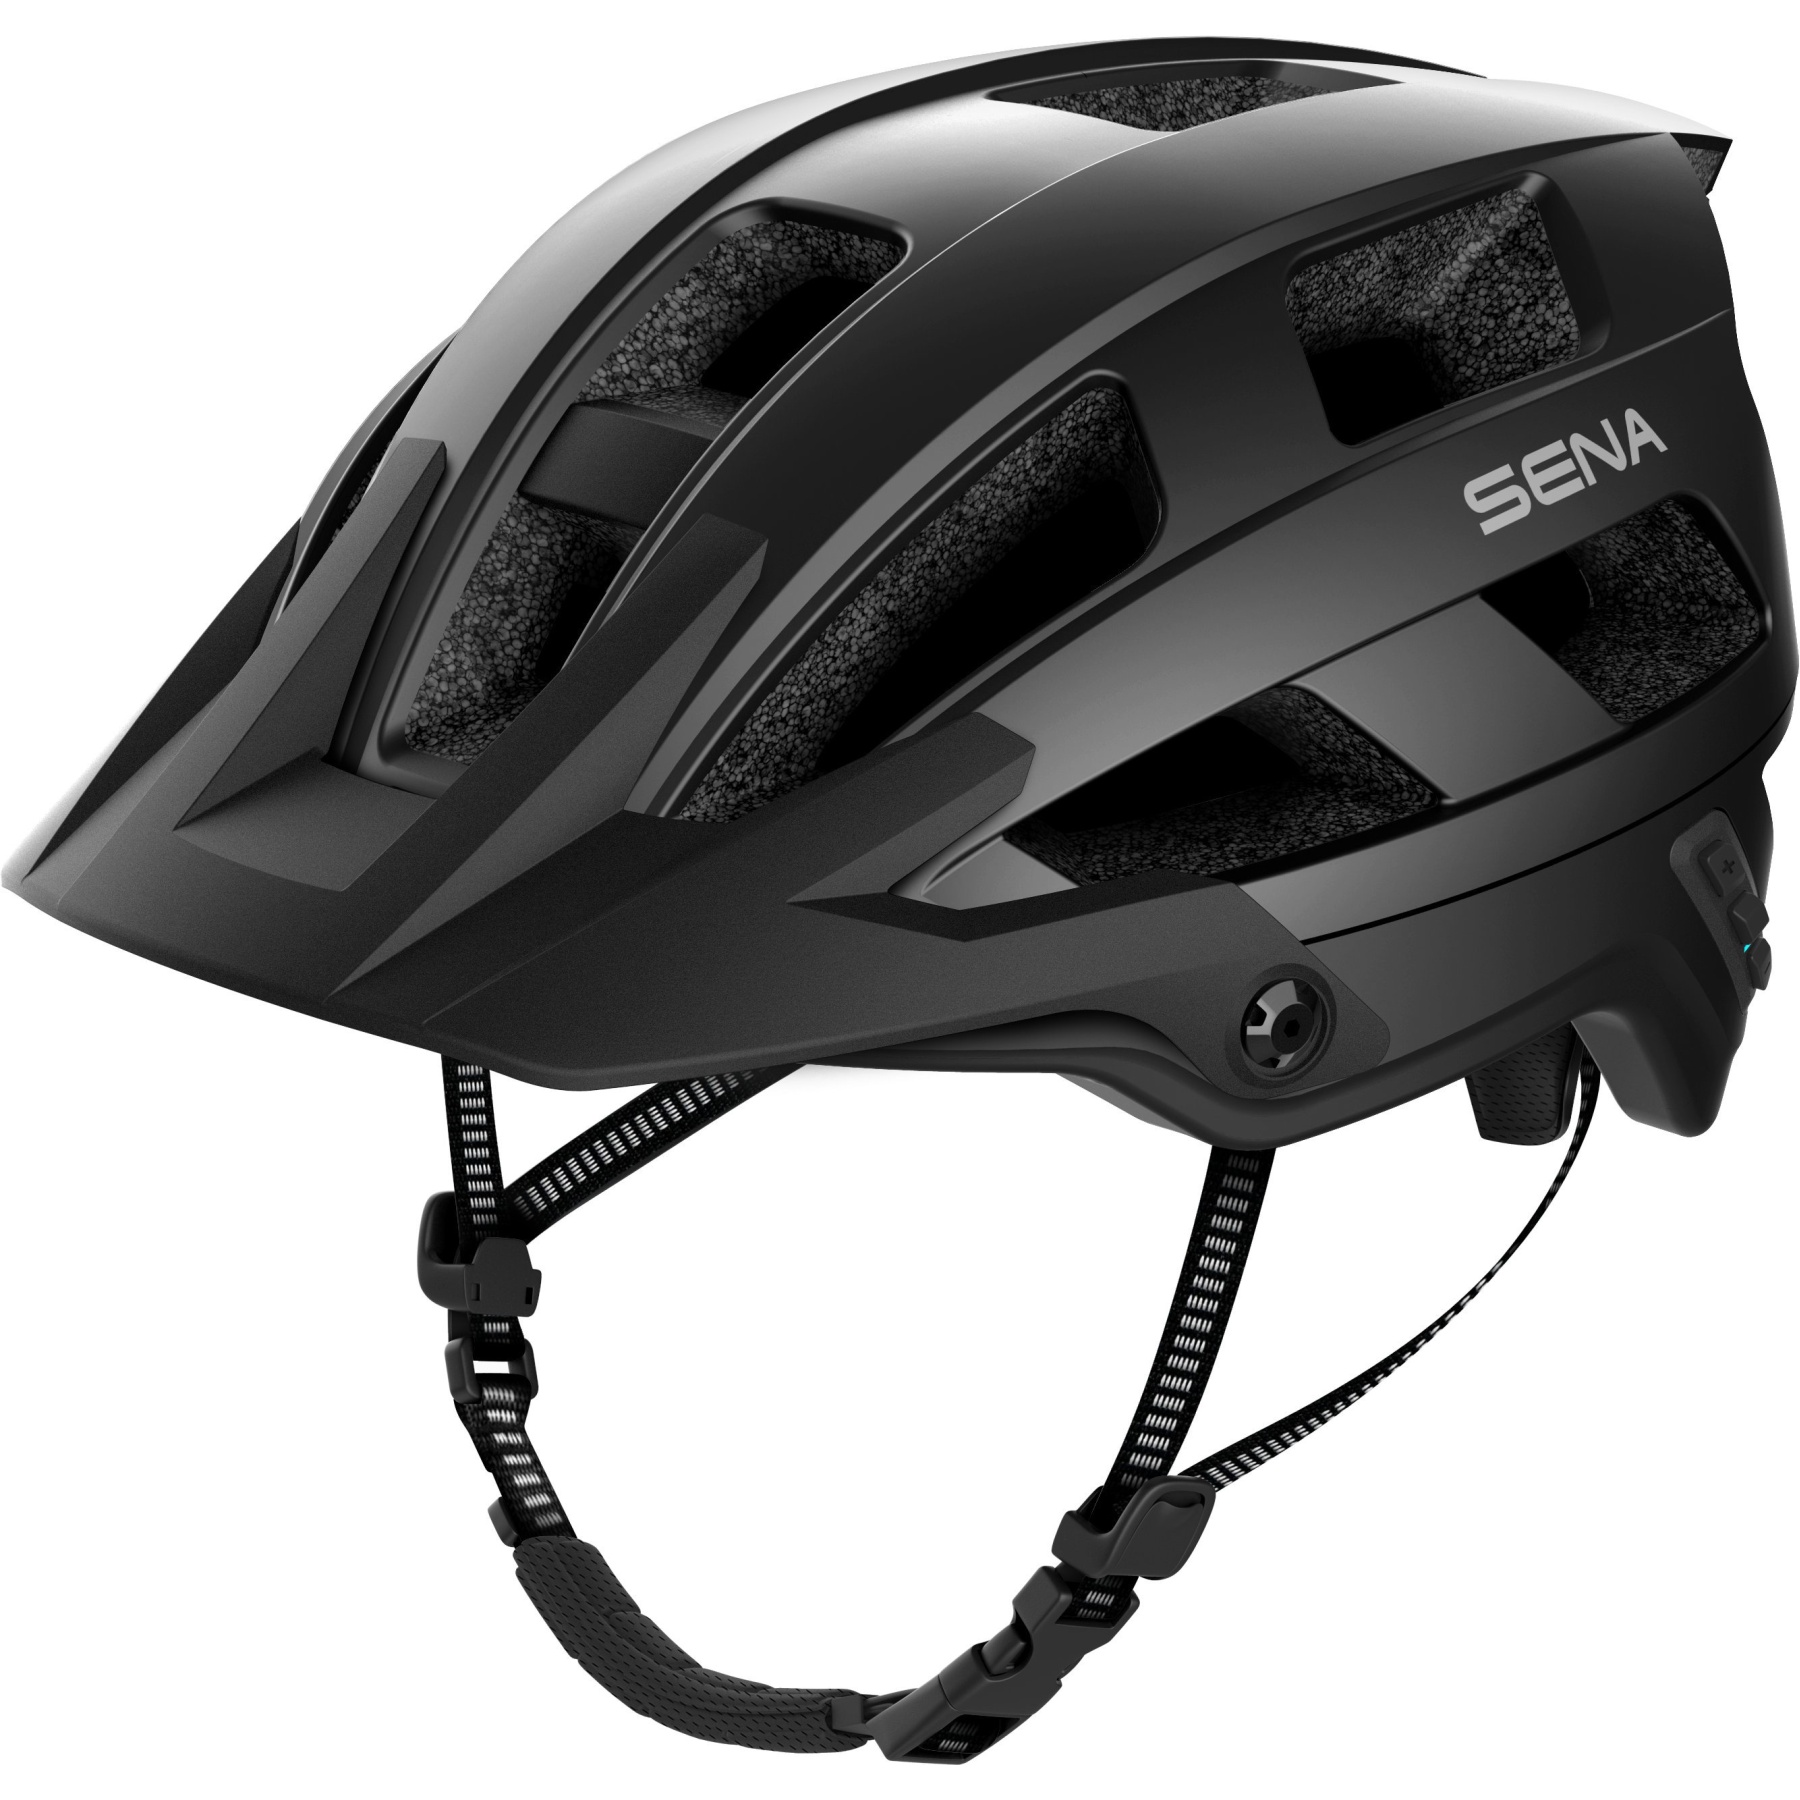 Produktbild von SENA M1 EVO Smart MTB Helm - ohne FM-Radio - Mattschwarz